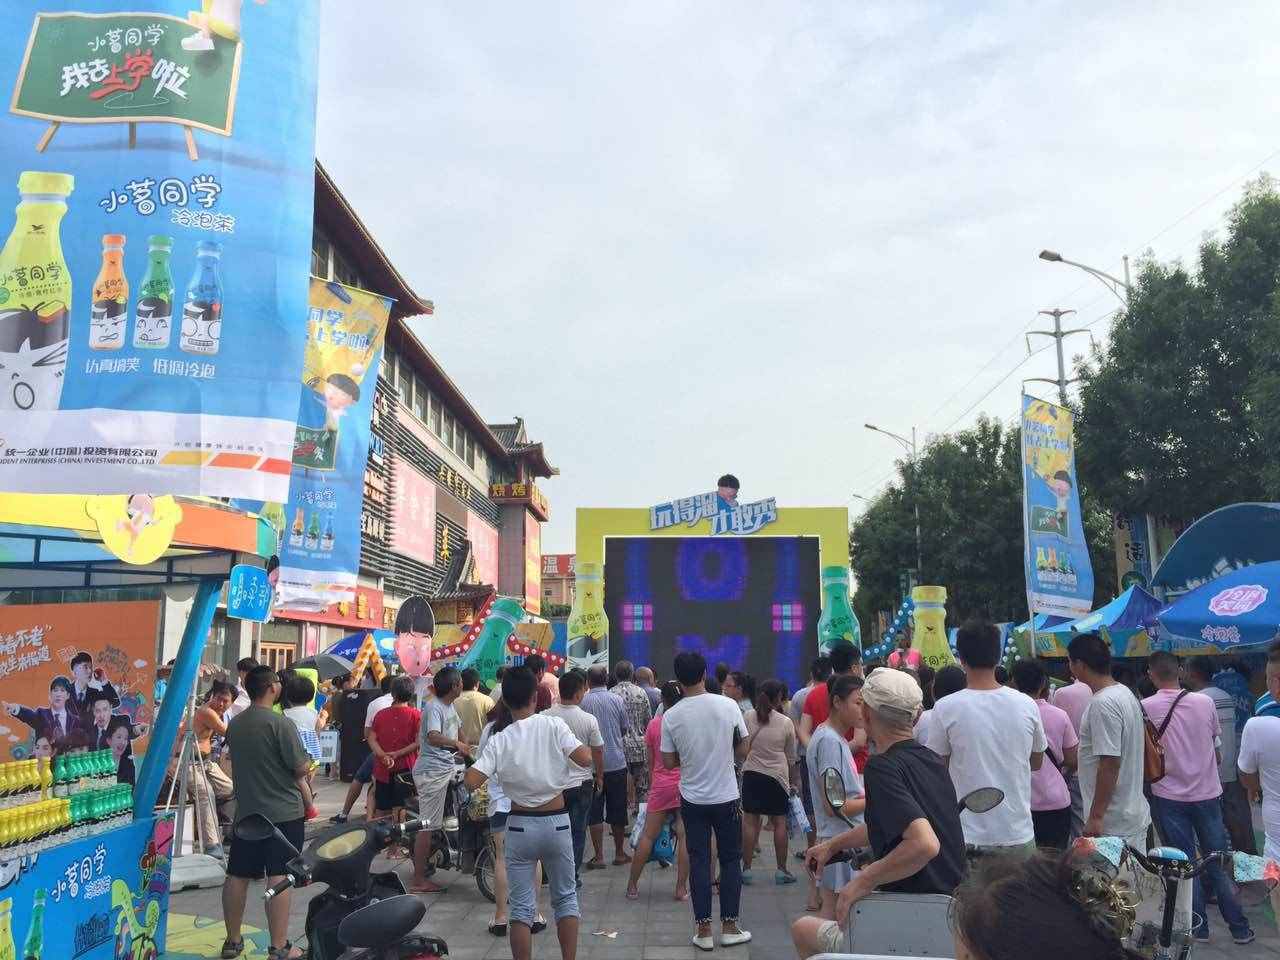 FM944郑州音乐广播 联合小茗同学在开封开启溜溜哒模式！